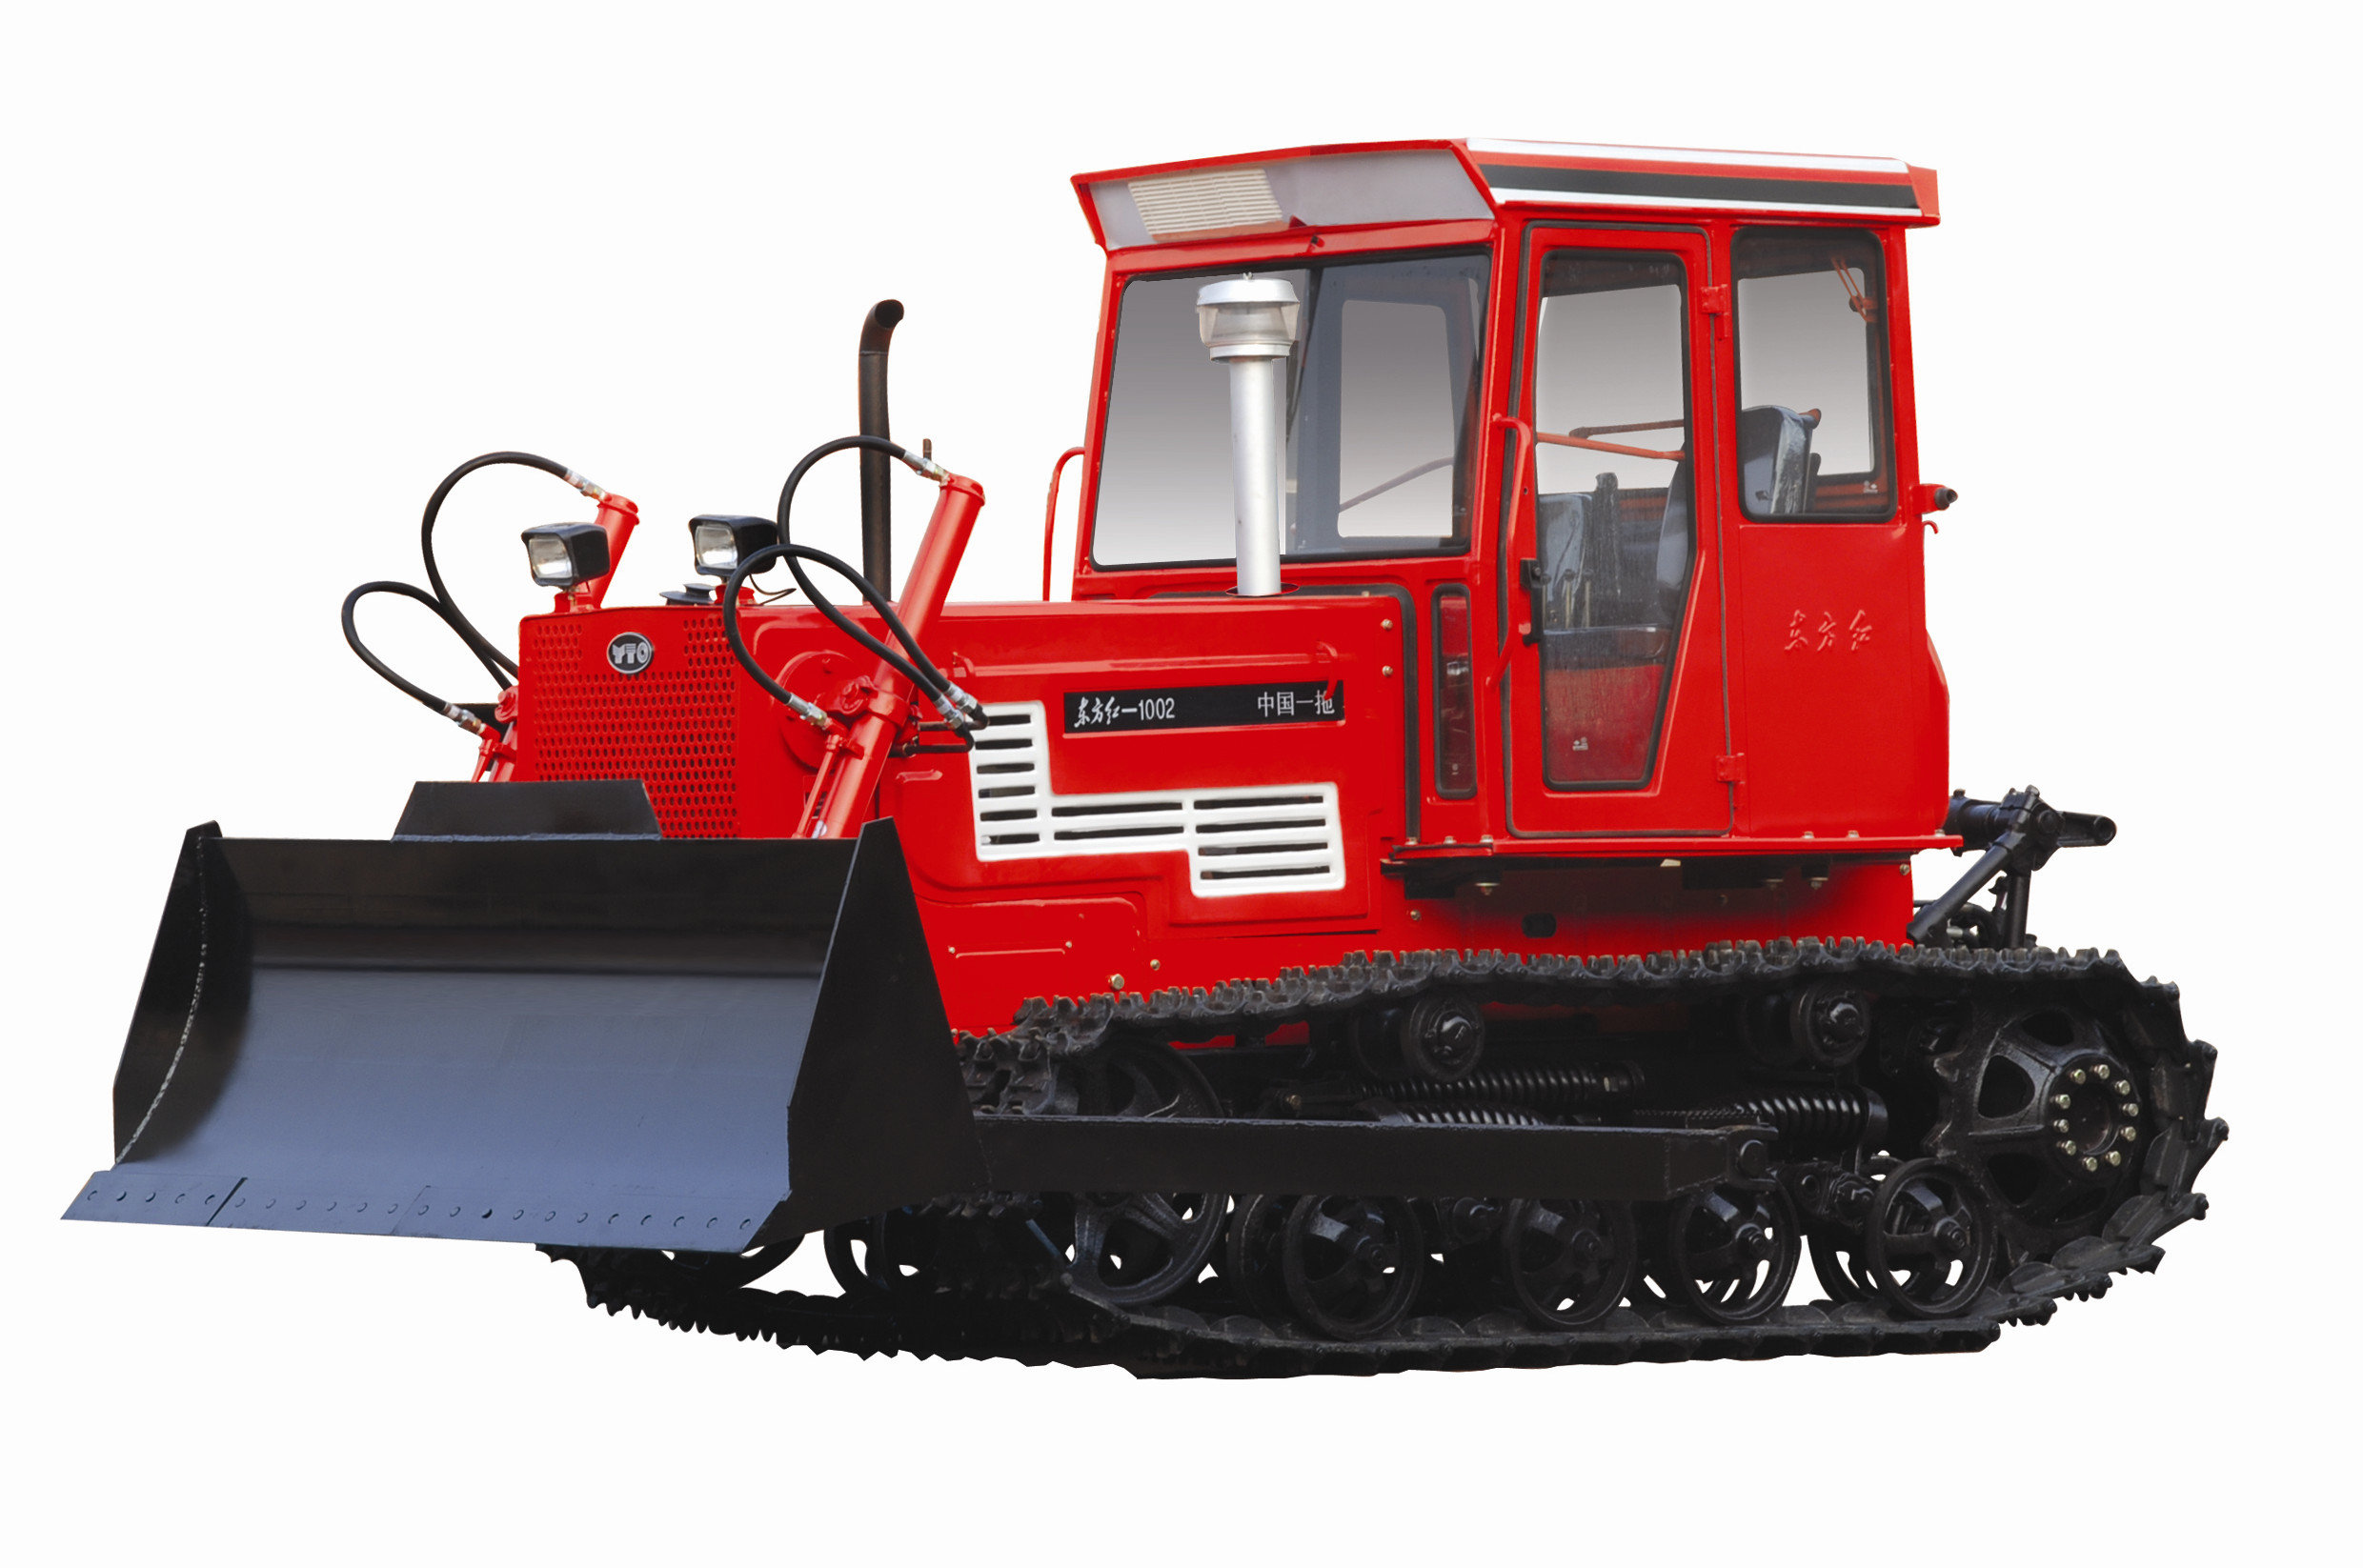 1002产品名称:东方红1002履带式拖拉机生产厂家:中国一拖集团有限公司